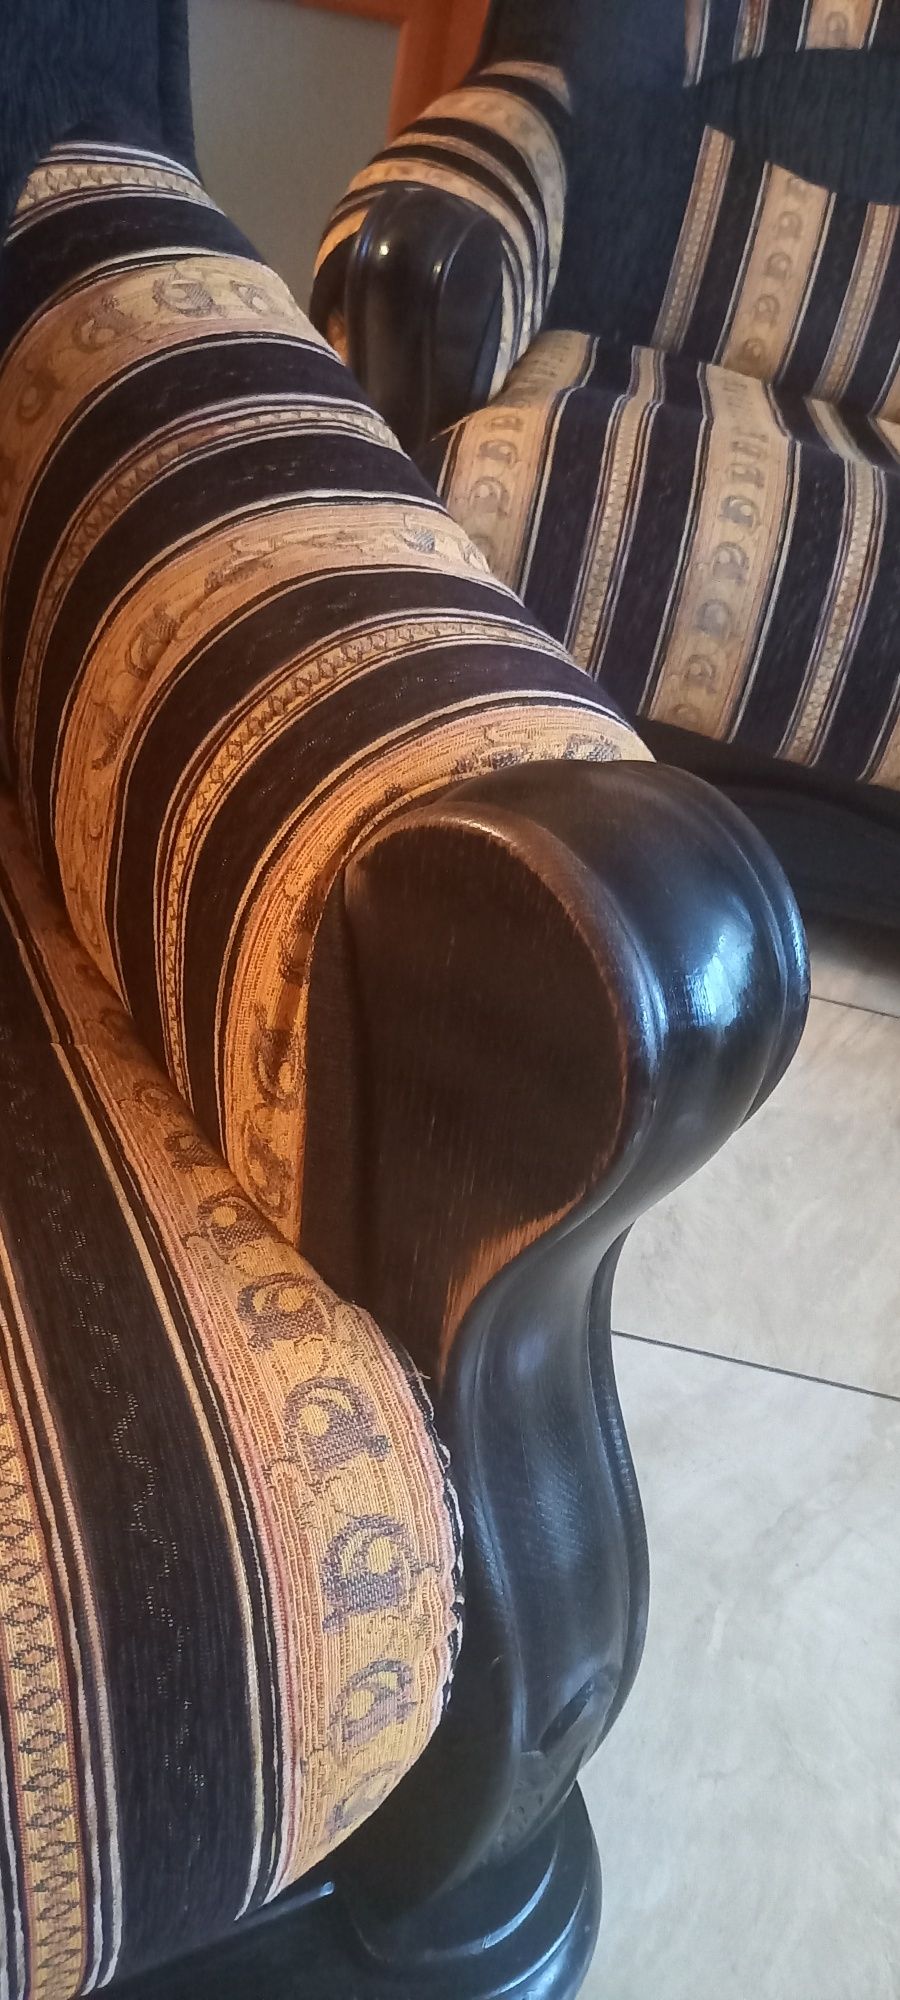 Komplet wypoczynkowy (sofa+2 fotele), drewniany 2+2